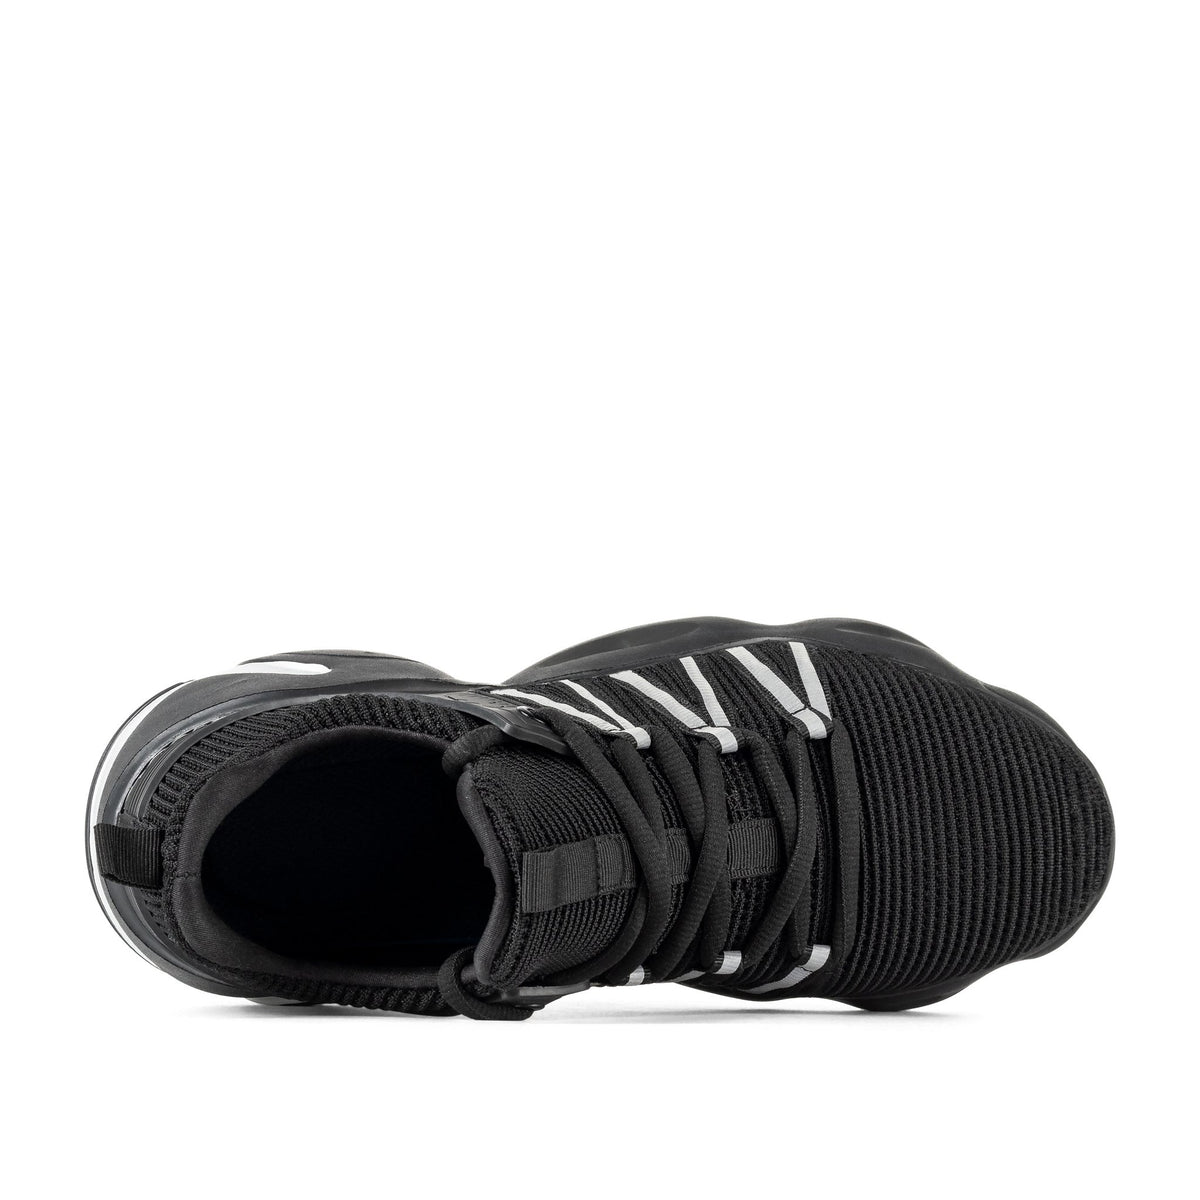 Space Black - Indestructible Shoes